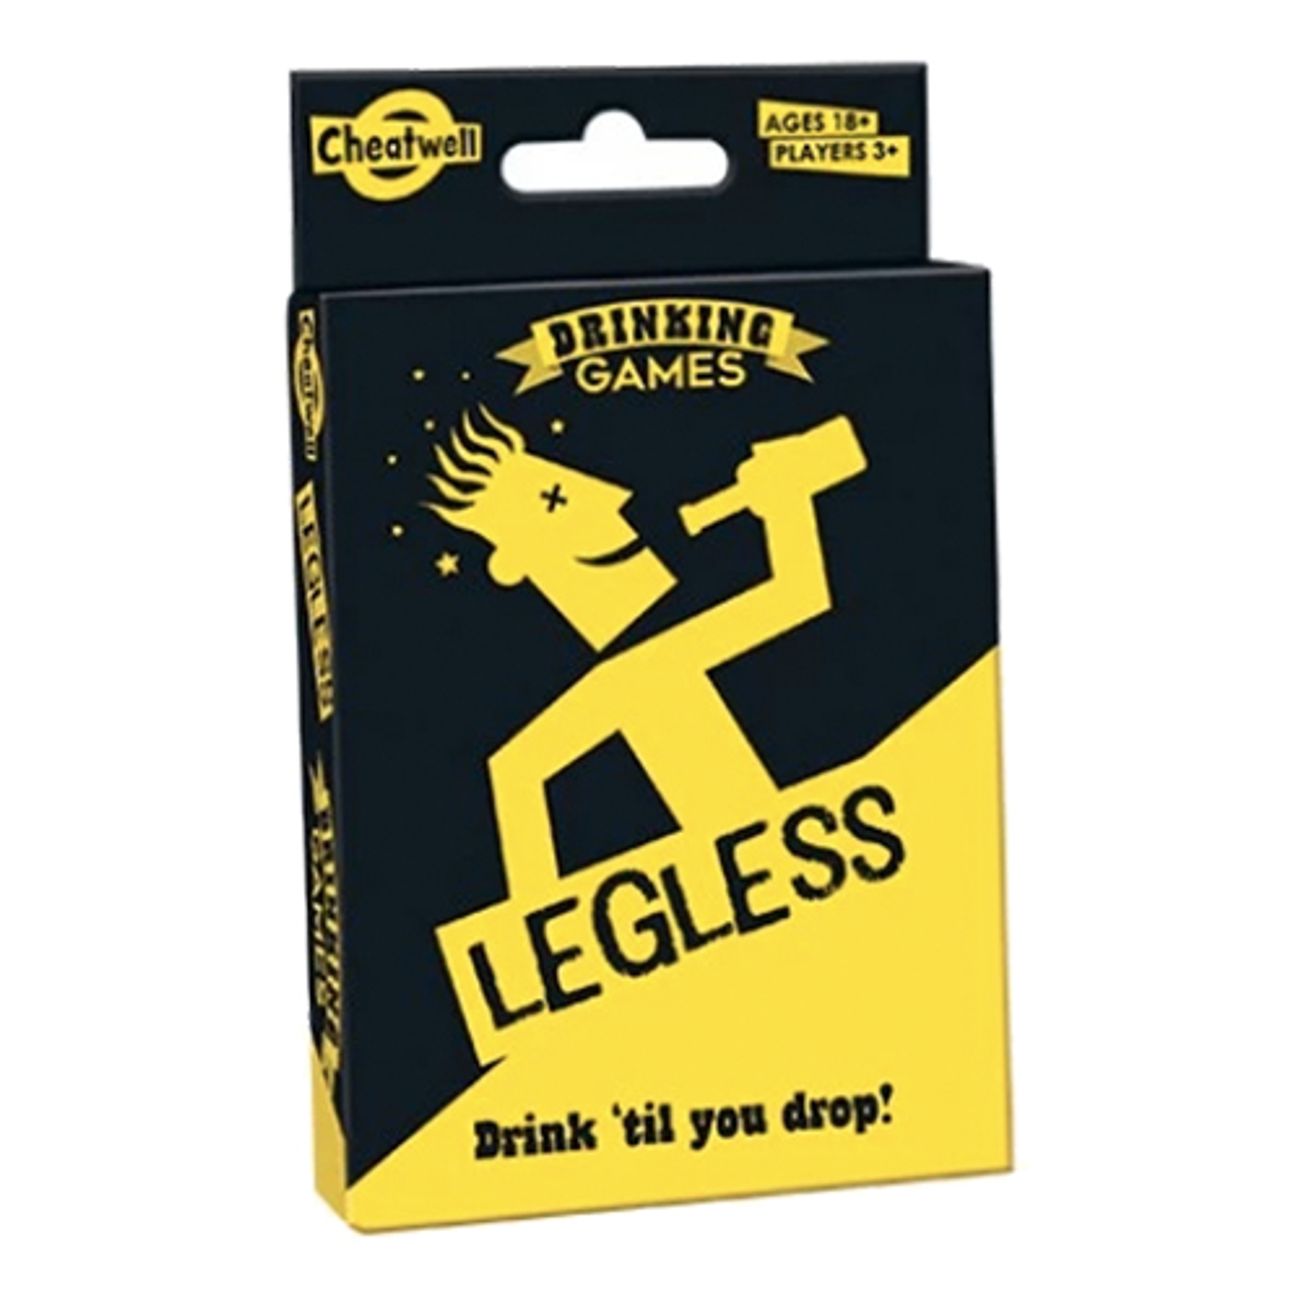 legless-dryckesspel-1